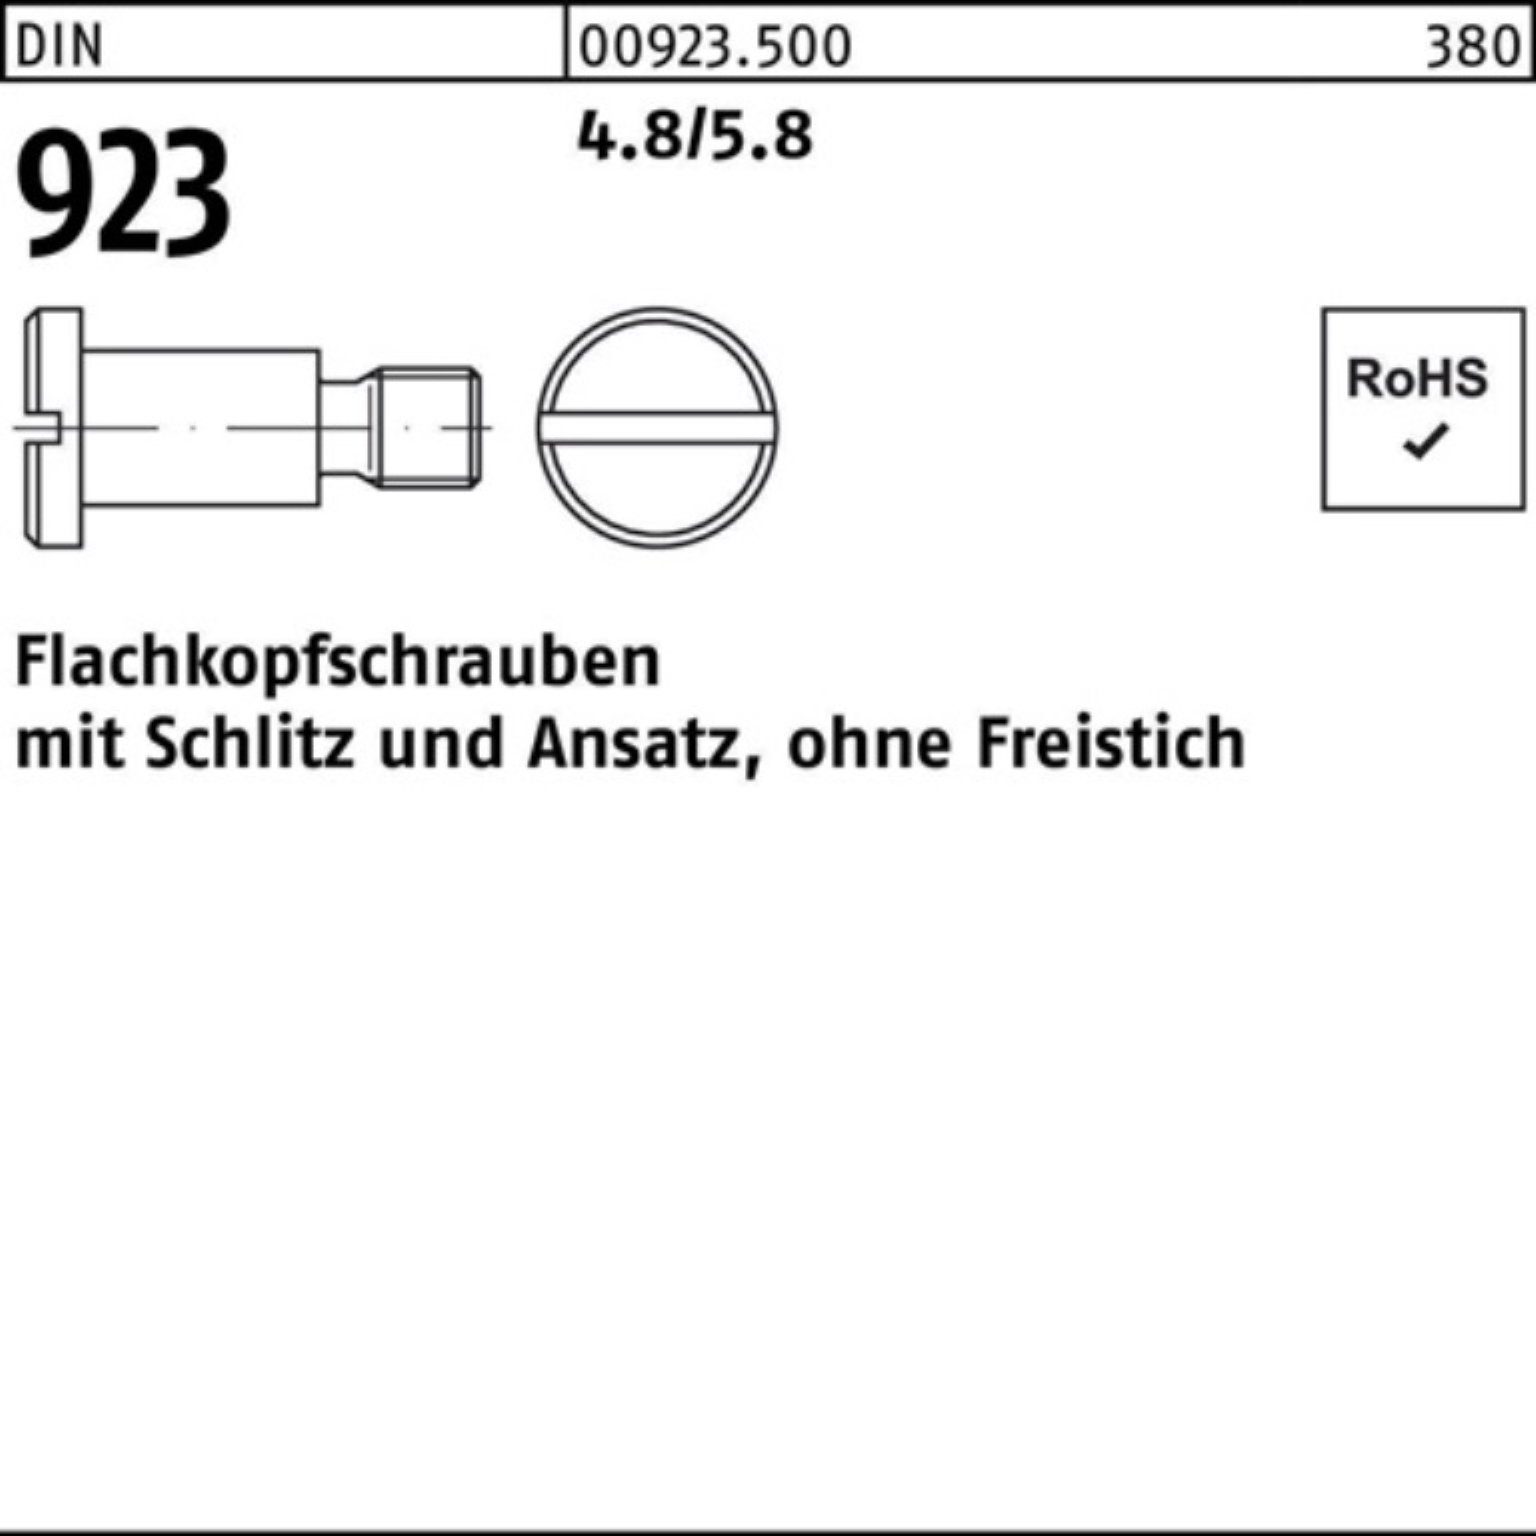 100er Flachkopfschraube Schlitz/Ansatz Schraube 923 M5x DIN 3x 4.8/5.8 7,0 Reyher Pack